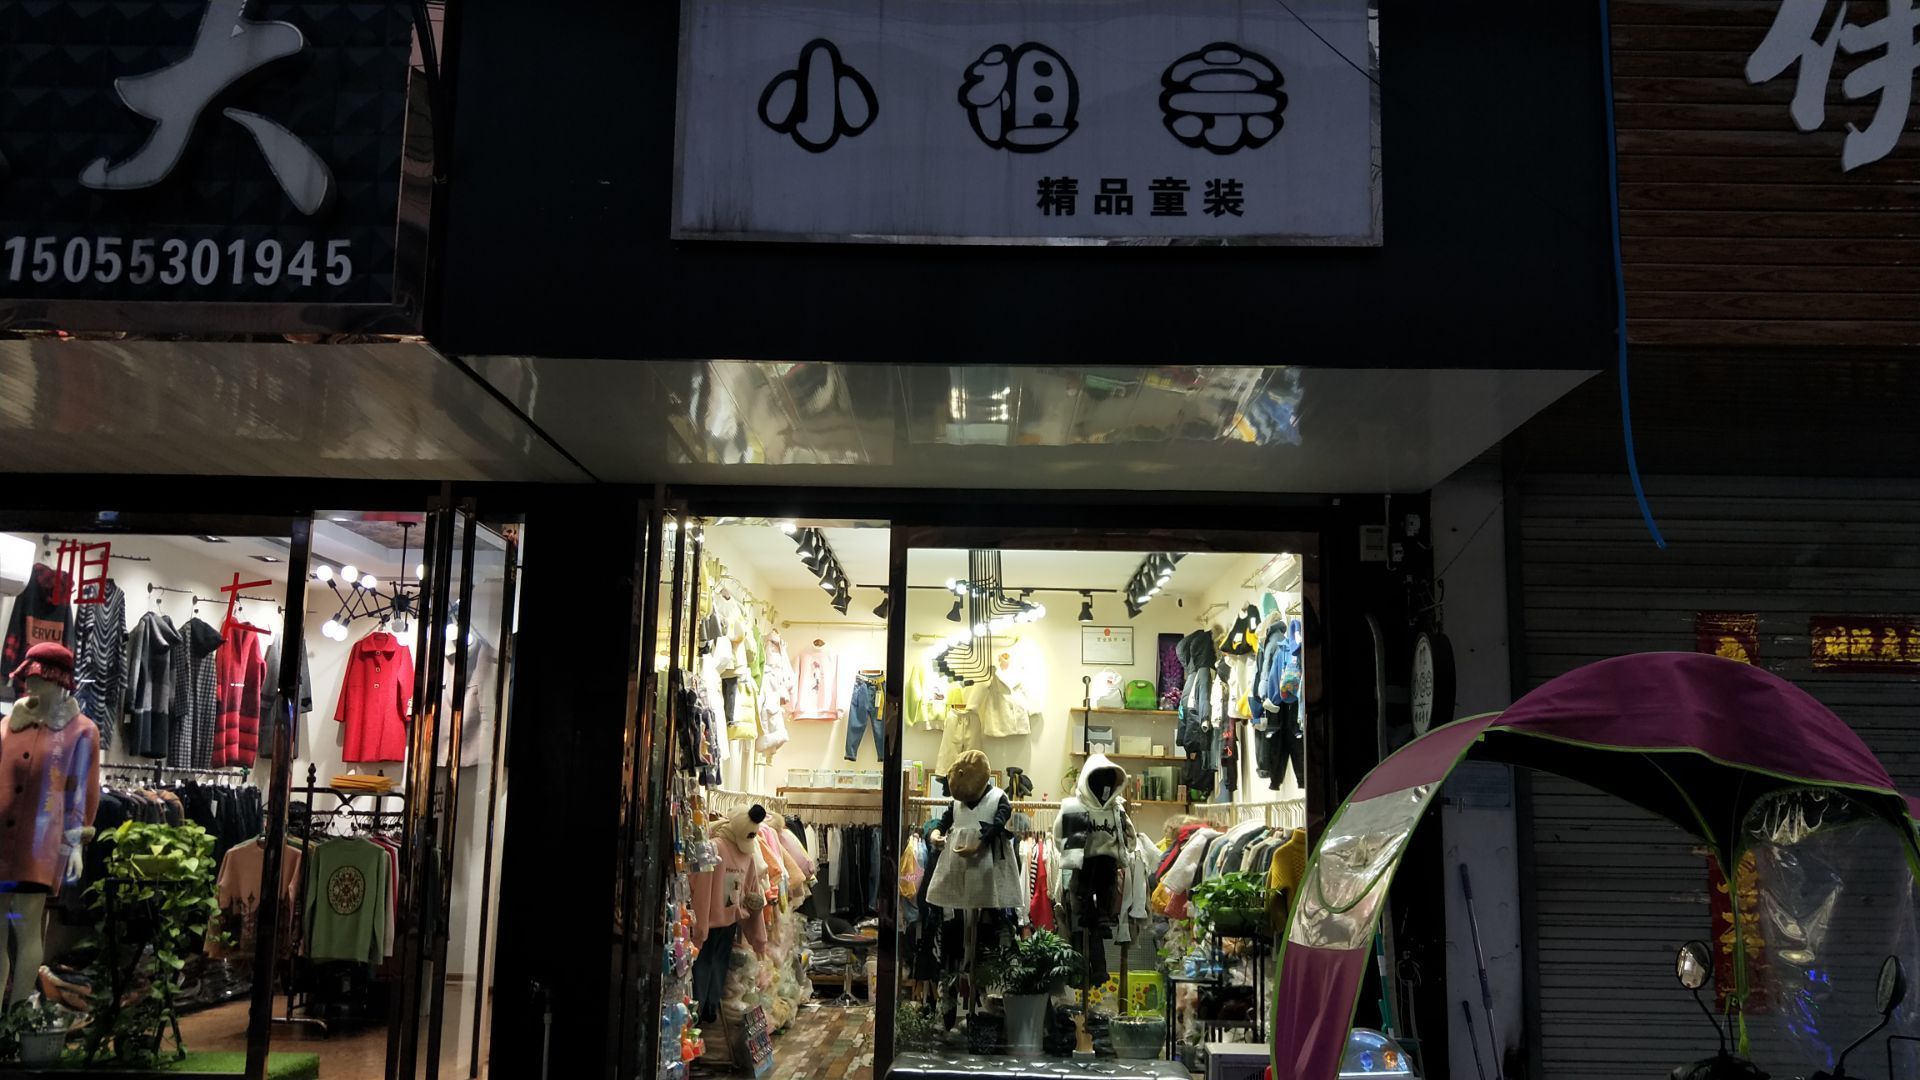 这家店是位于我们三山小康路上的一家童装店,从店名叫小祖宗就可以看